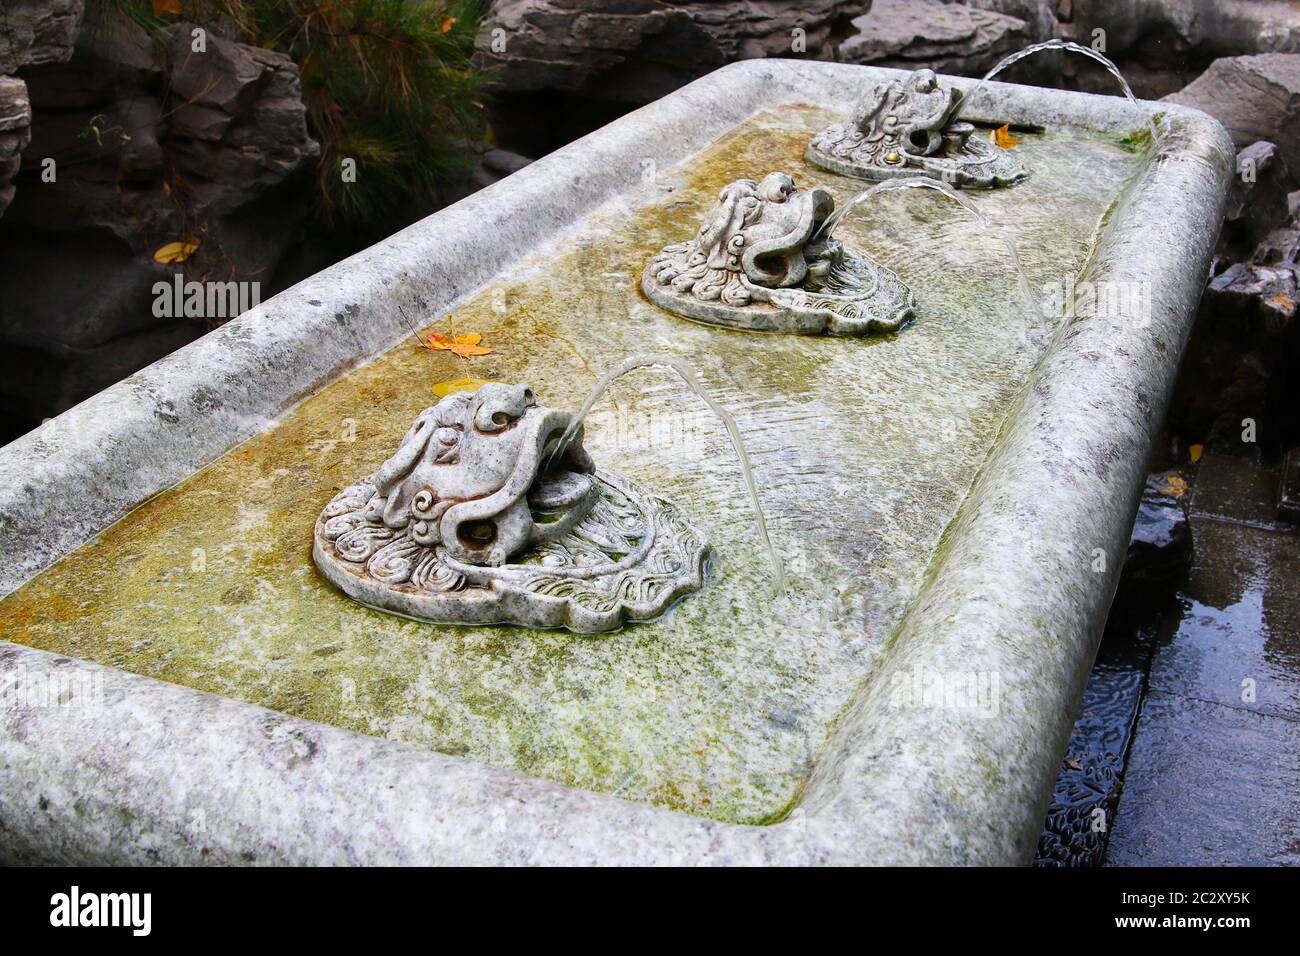 Image de l'eau sortant des têtes de lion en marbre sculpté, Baotu Springs, Jinan City, Shandong province, Chine. Orientation horizontale. Banque D'Images